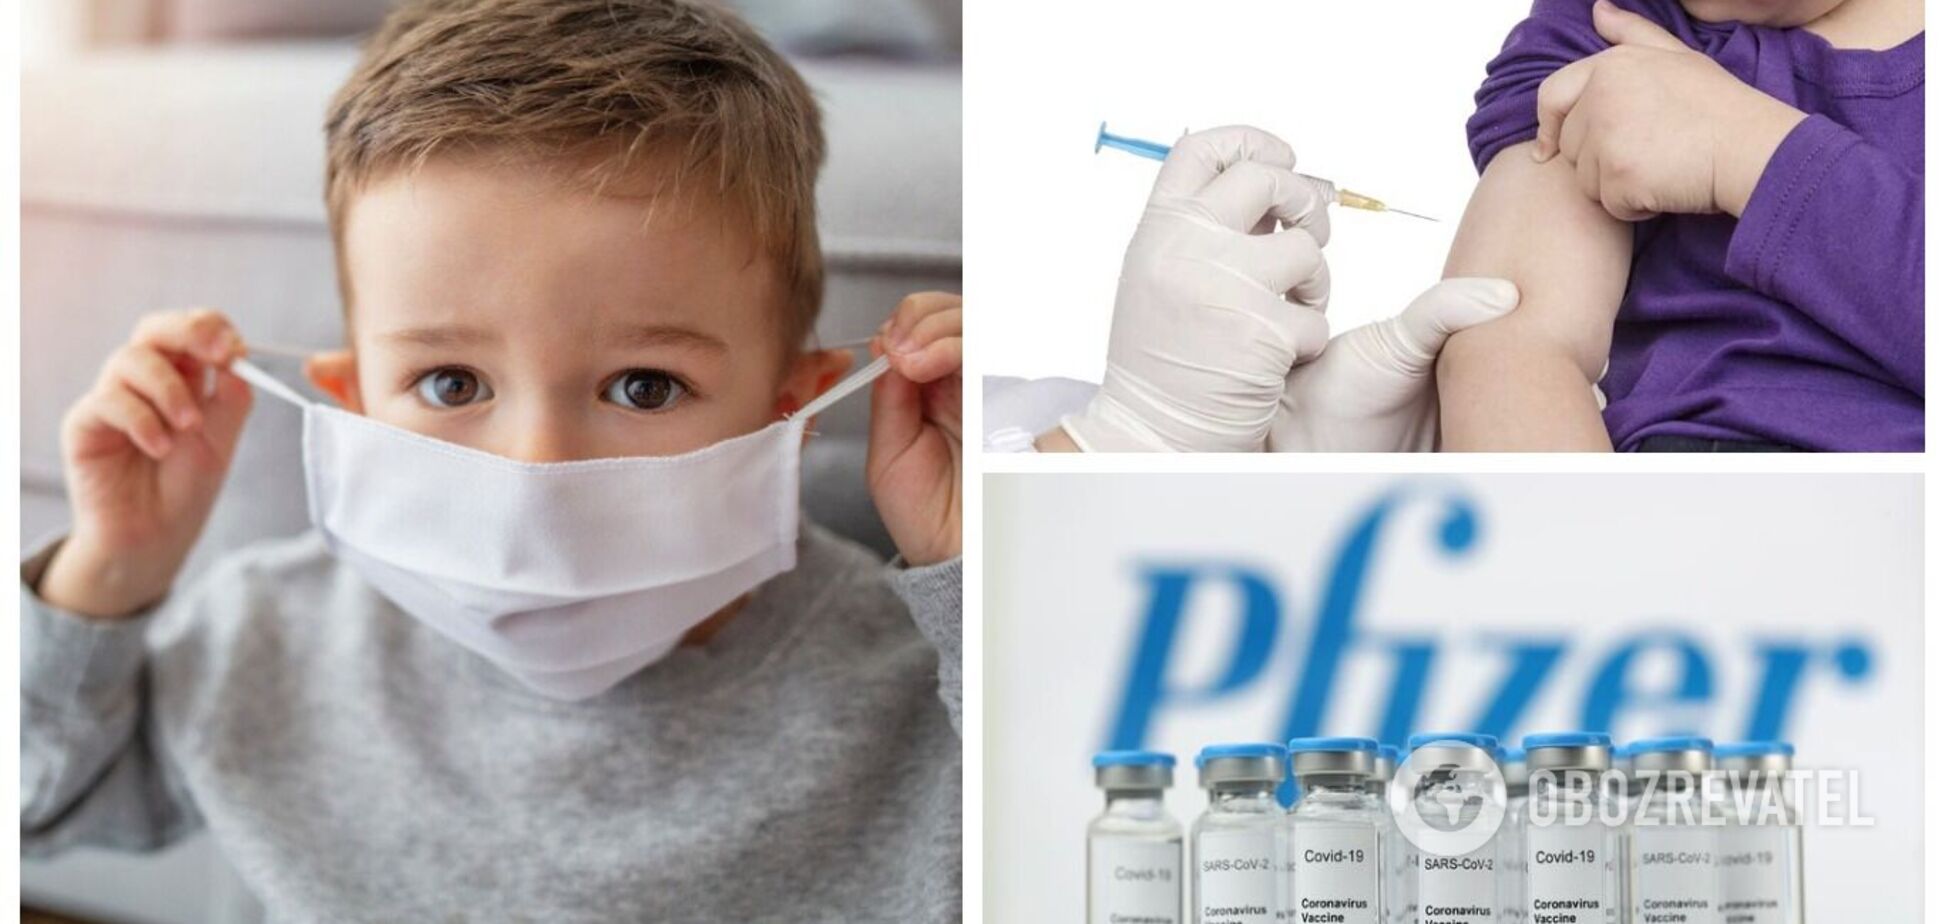 В ЕС разрешили делать прививки против COVID-19 детям от 5 лет до 11 лет: какой препарат рекомендуют